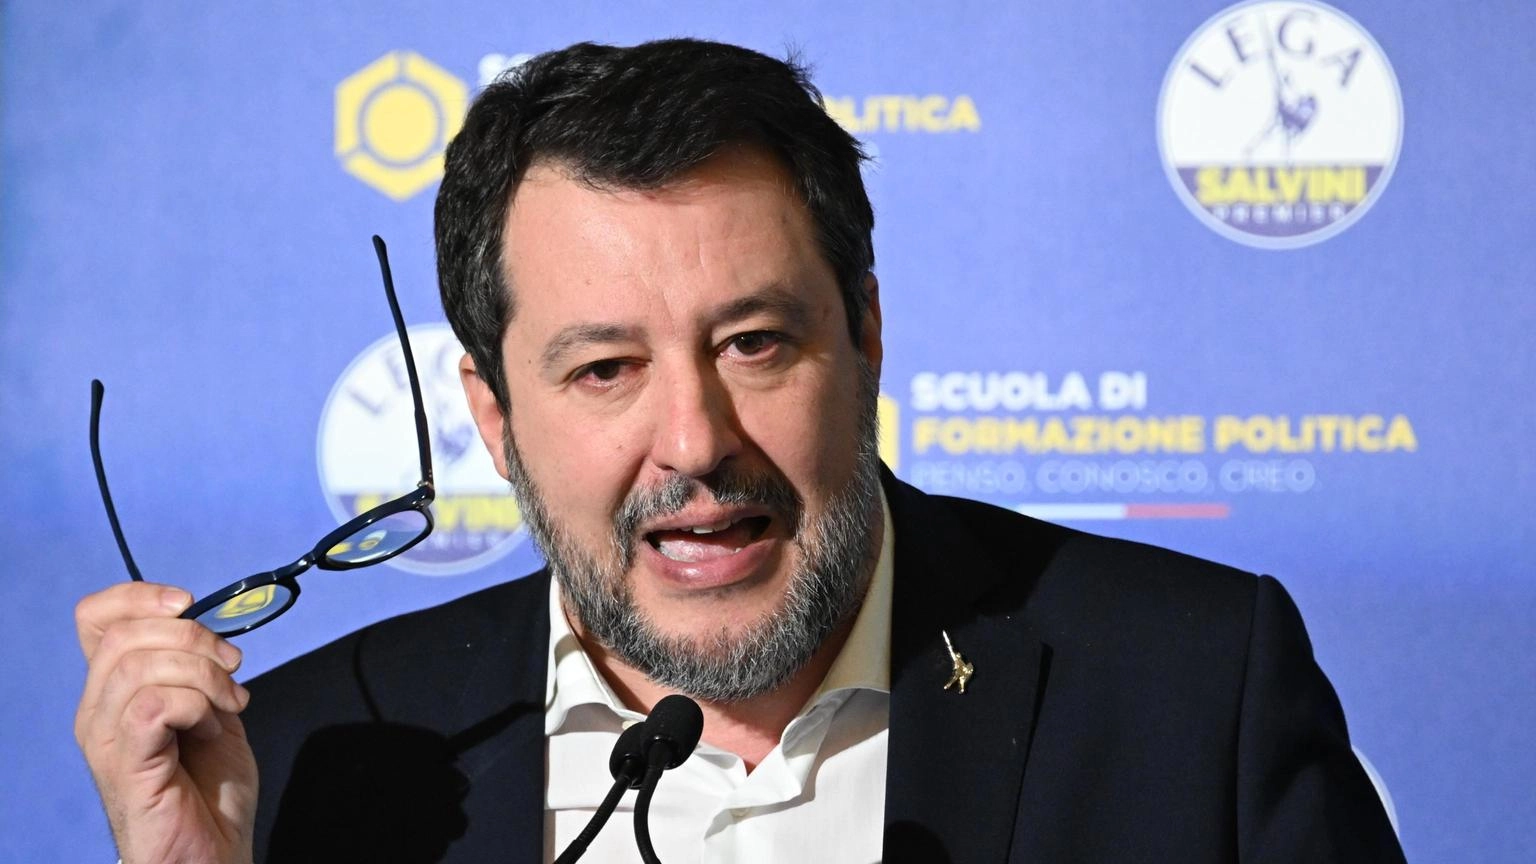 Salvini, le parole di Mattarella si leggono, non si commentano